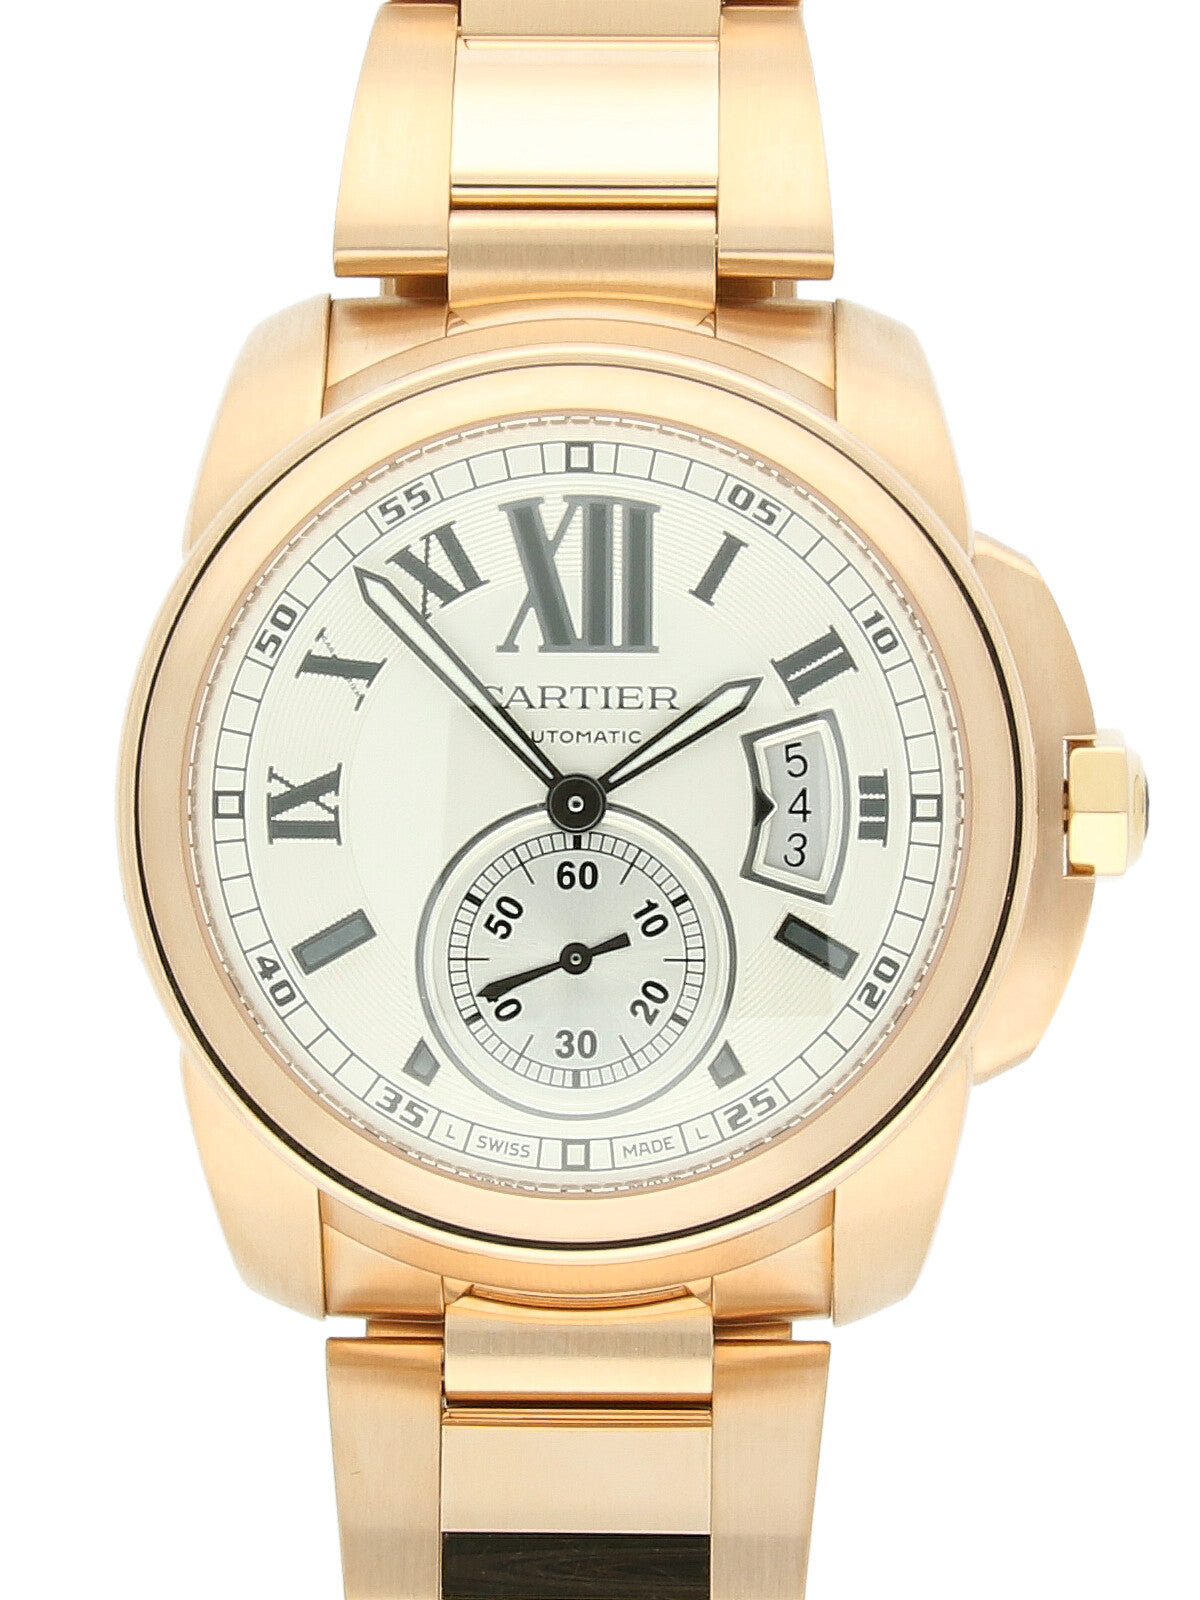 Pre Owned Cartier Calibre De Cartier 18ct Rose Gold Watch on Bracelet